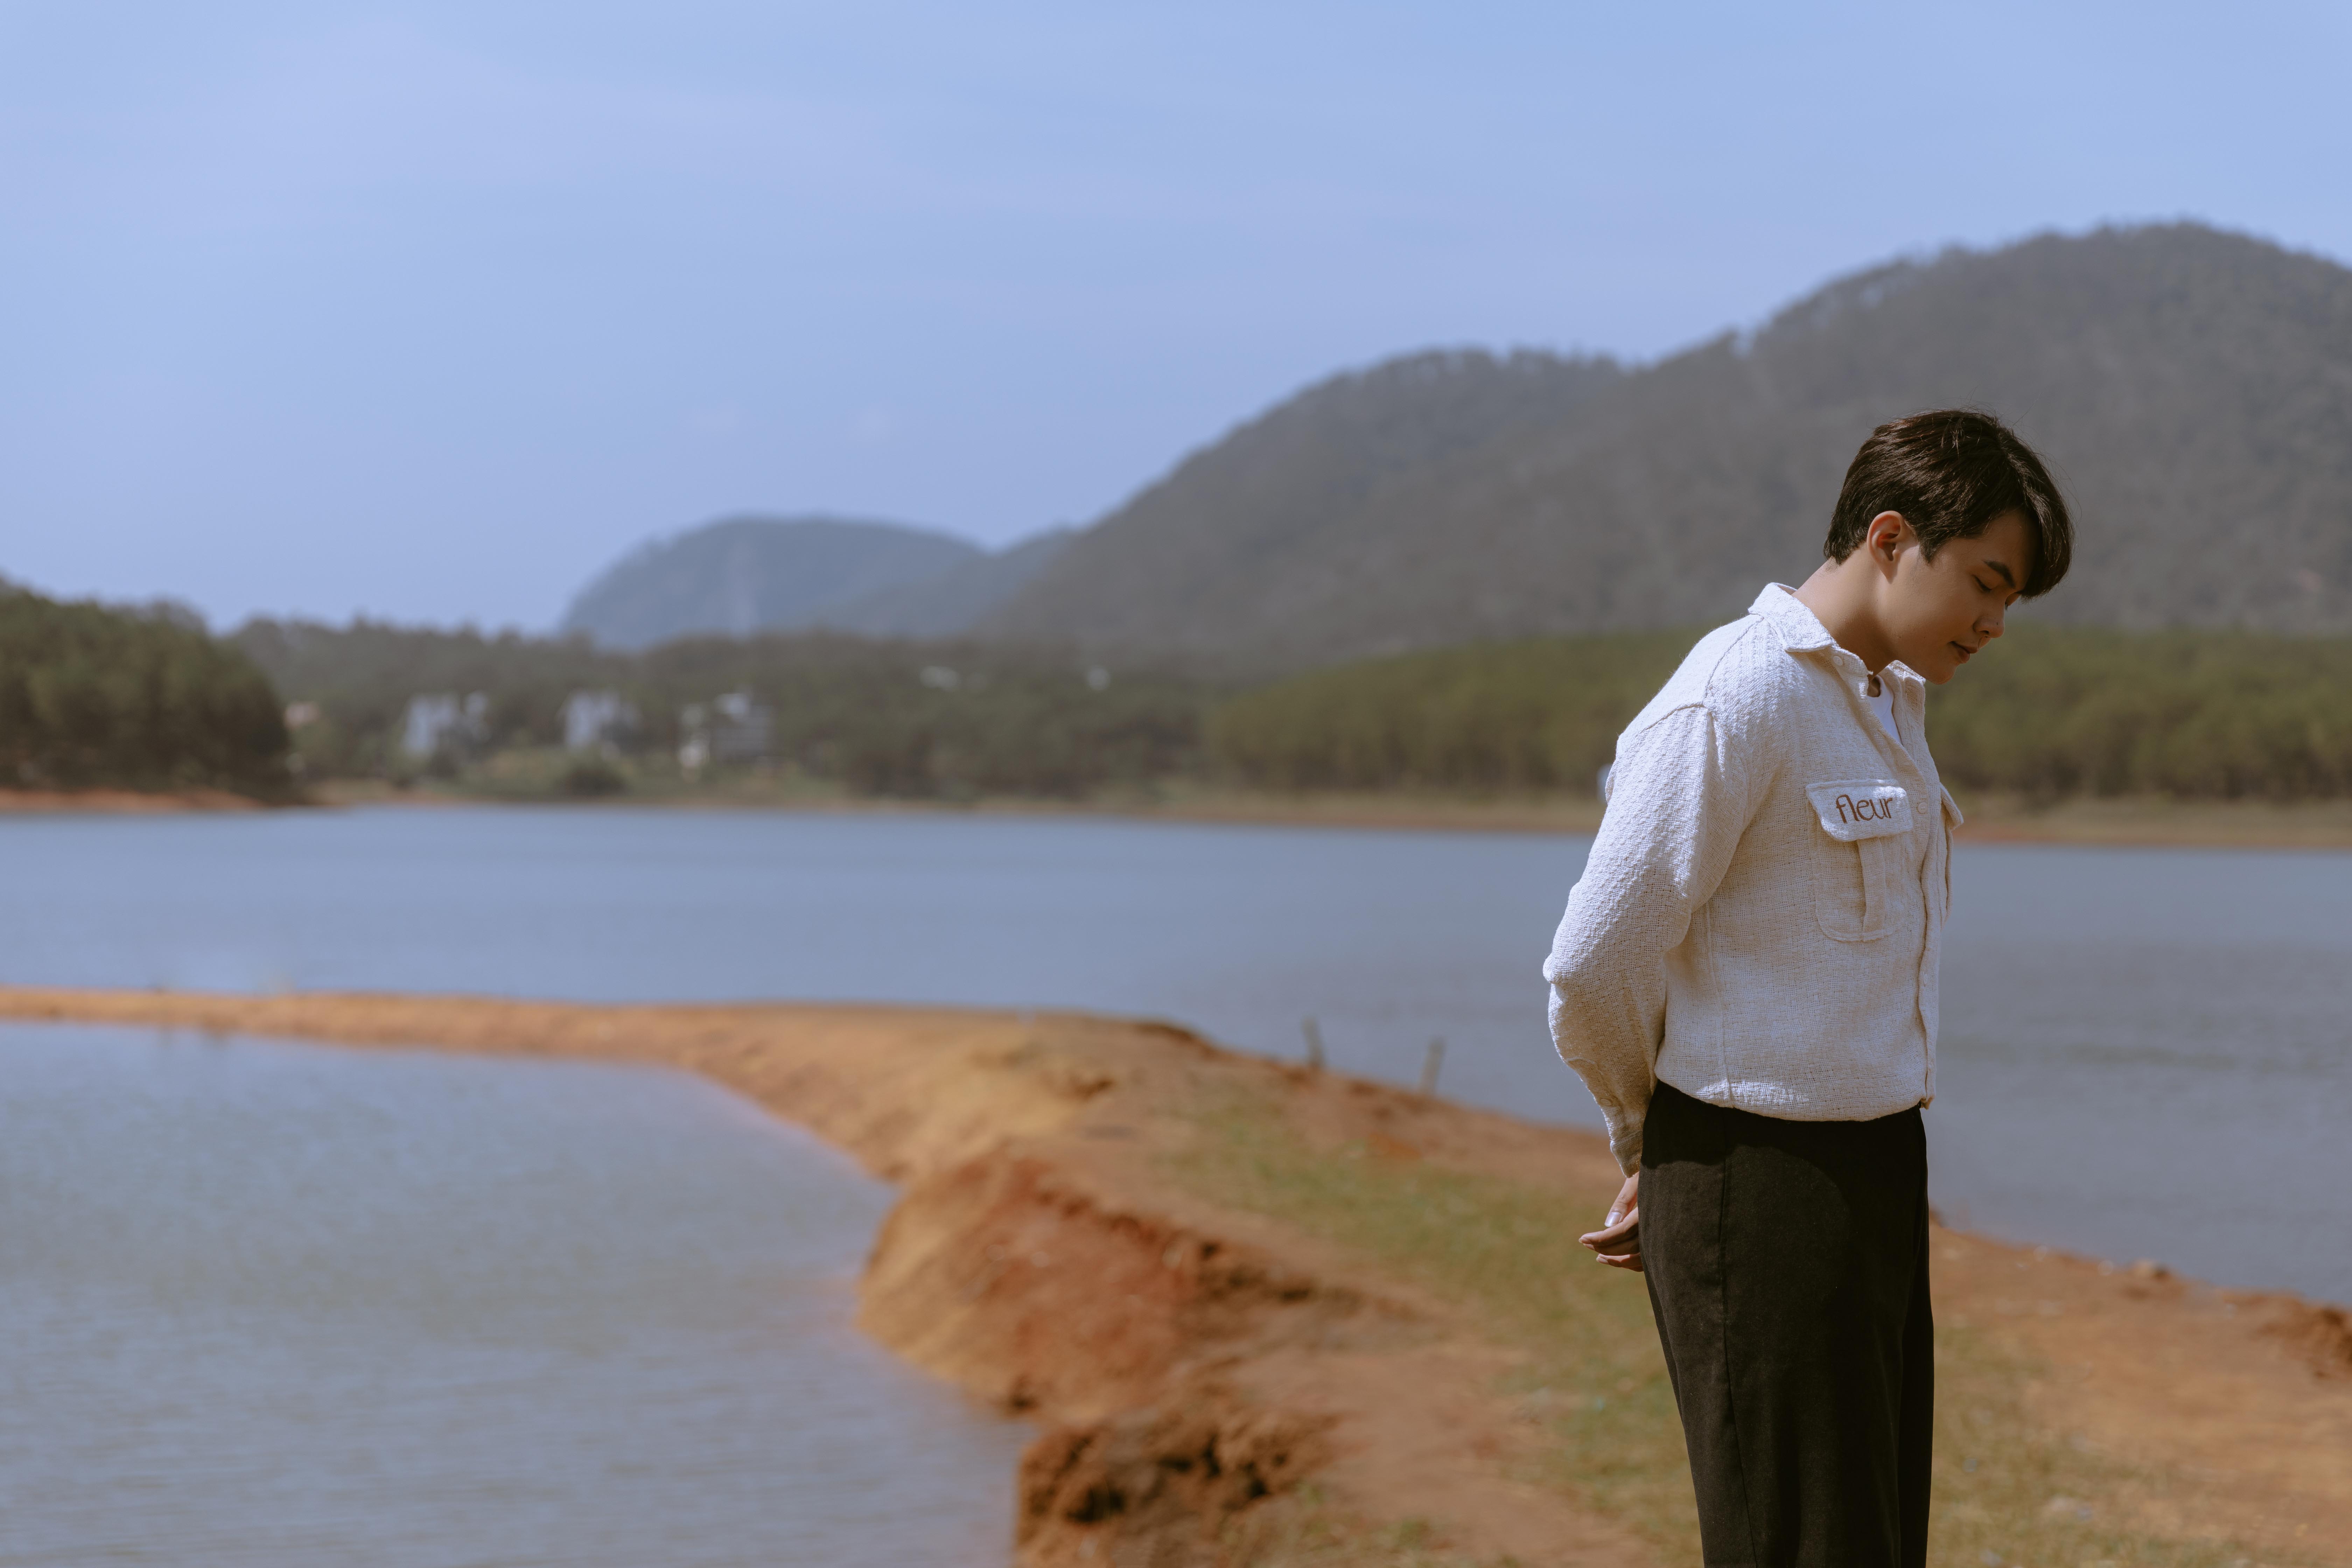 Andiez mang sân khấu ra giữa hồ Tuyền Lâm, vực dậy sau chuỗi ngày muốn bỏ nghề - ảnh 3